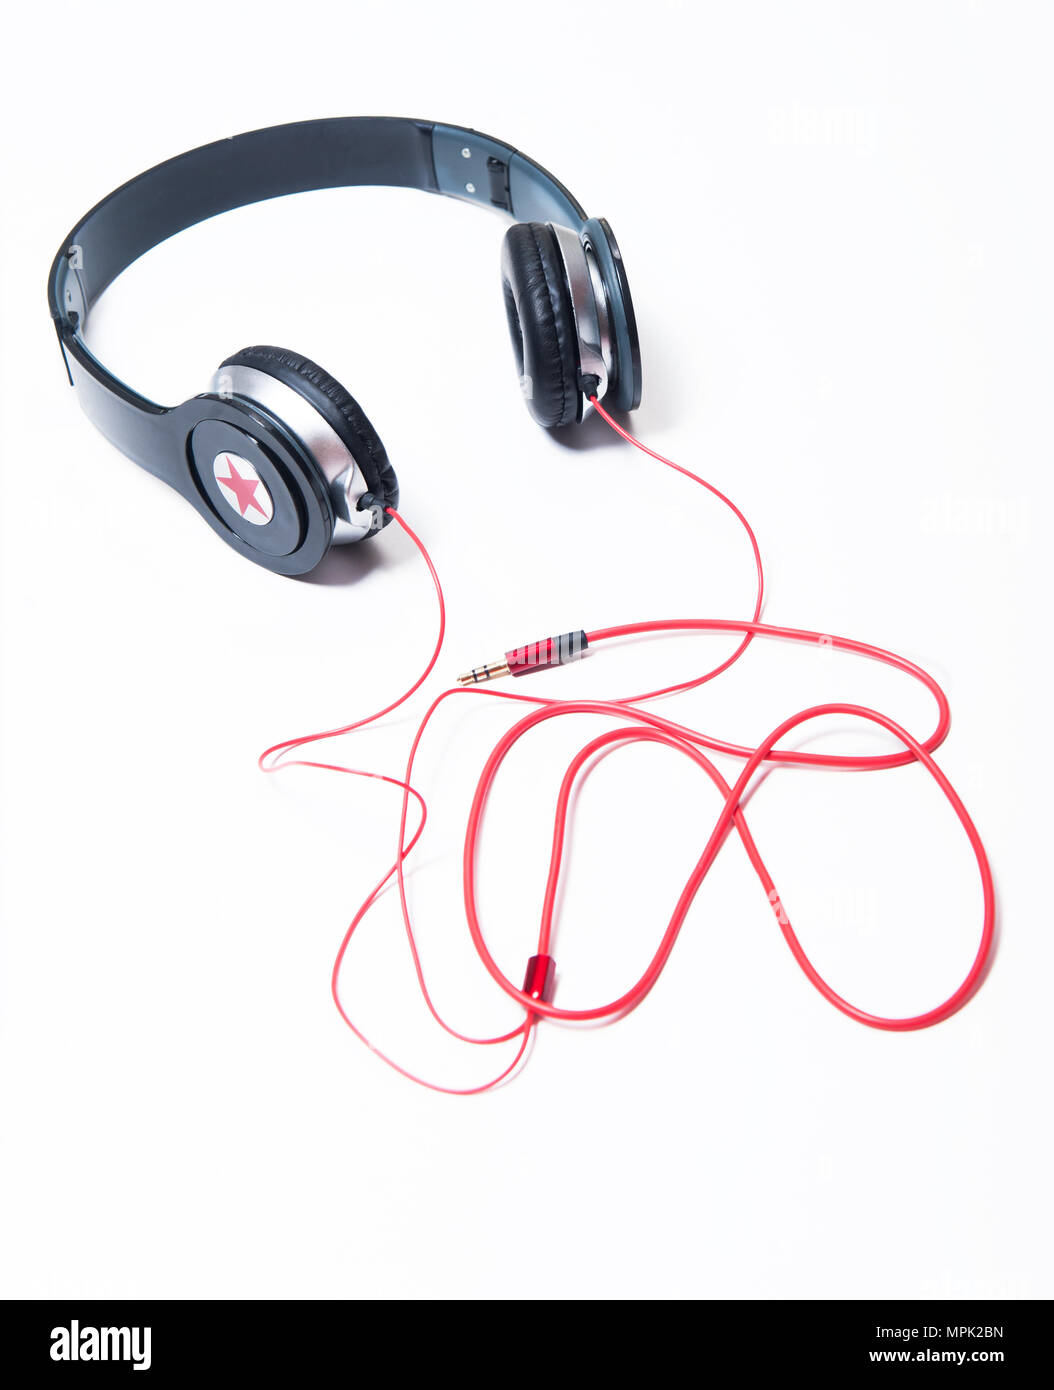 Photo Black headphones on white isolated background Stock Photo